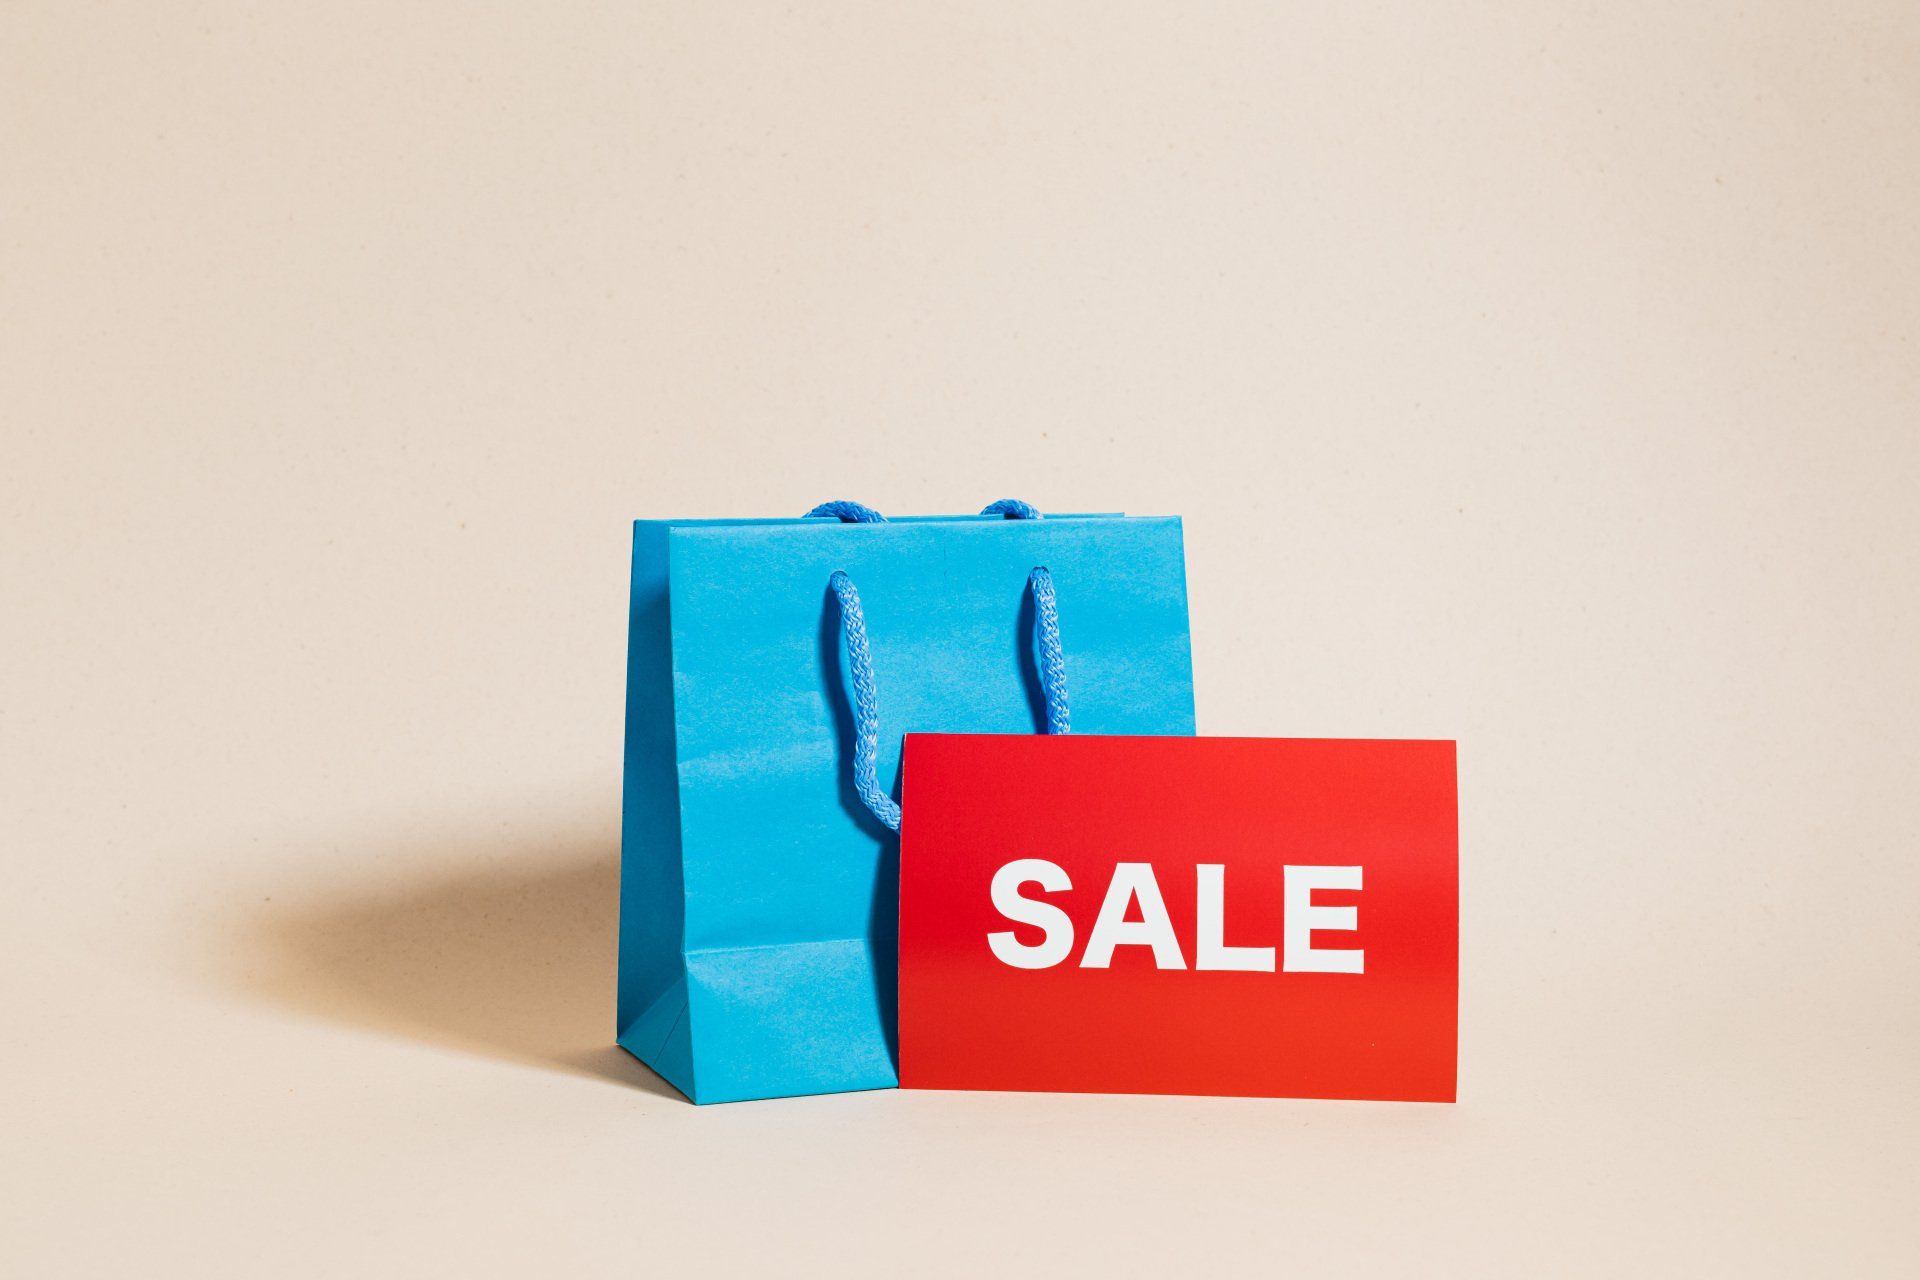 Crecimiento sin contratiempos: Cómo manejar ventas y cancelaciones de manera profesional en shopify